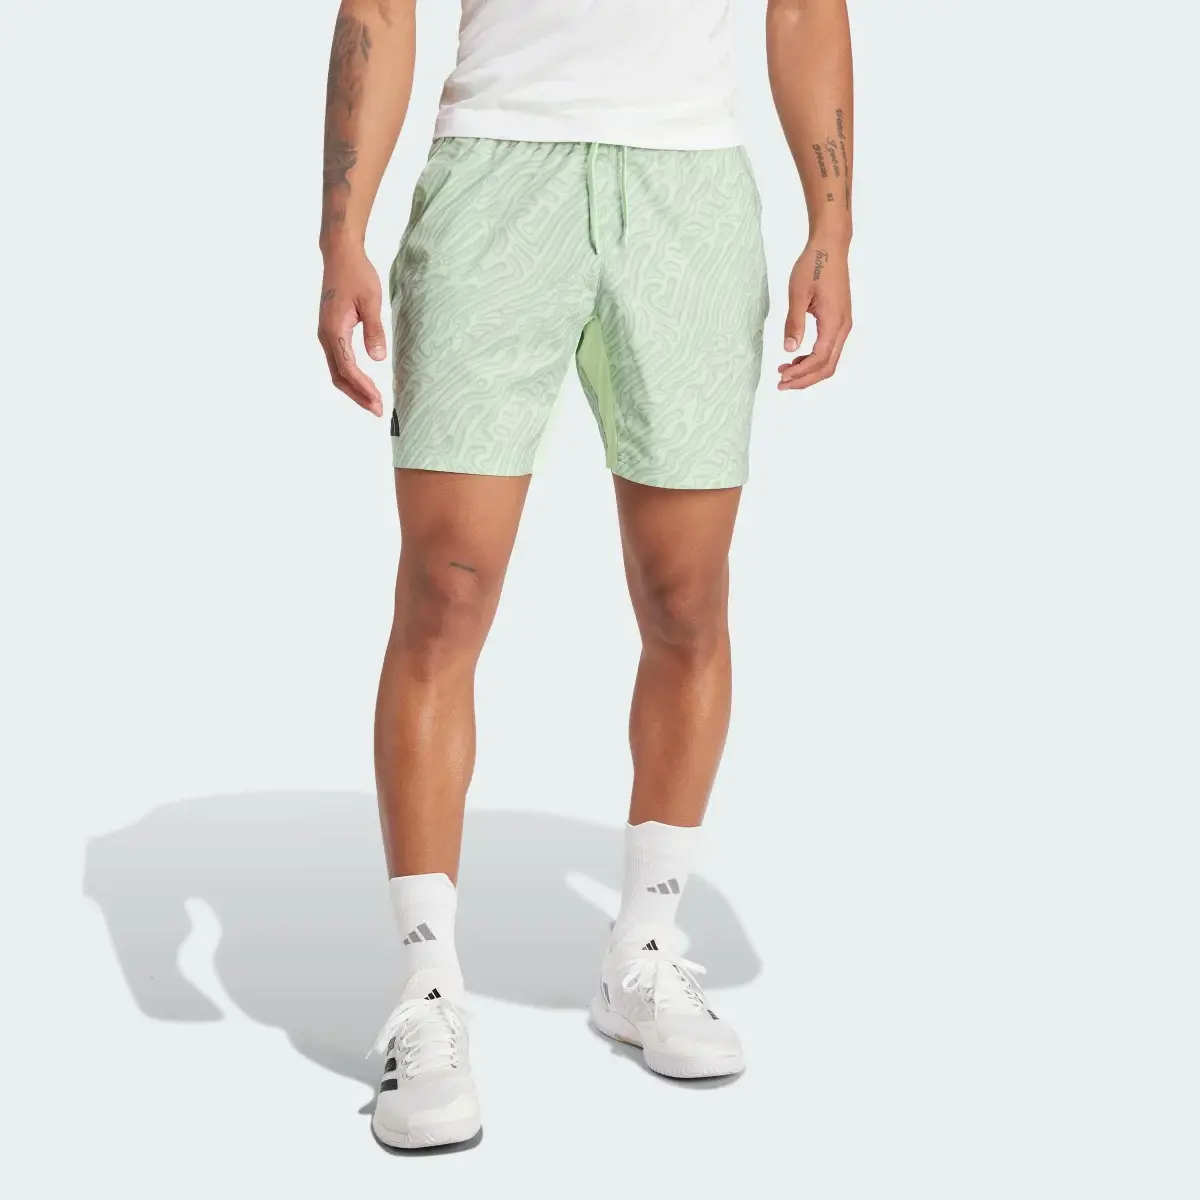 Adidas Tennis HEAT.RDY Pro Printed Ergo 7-Inch Shorts. 1